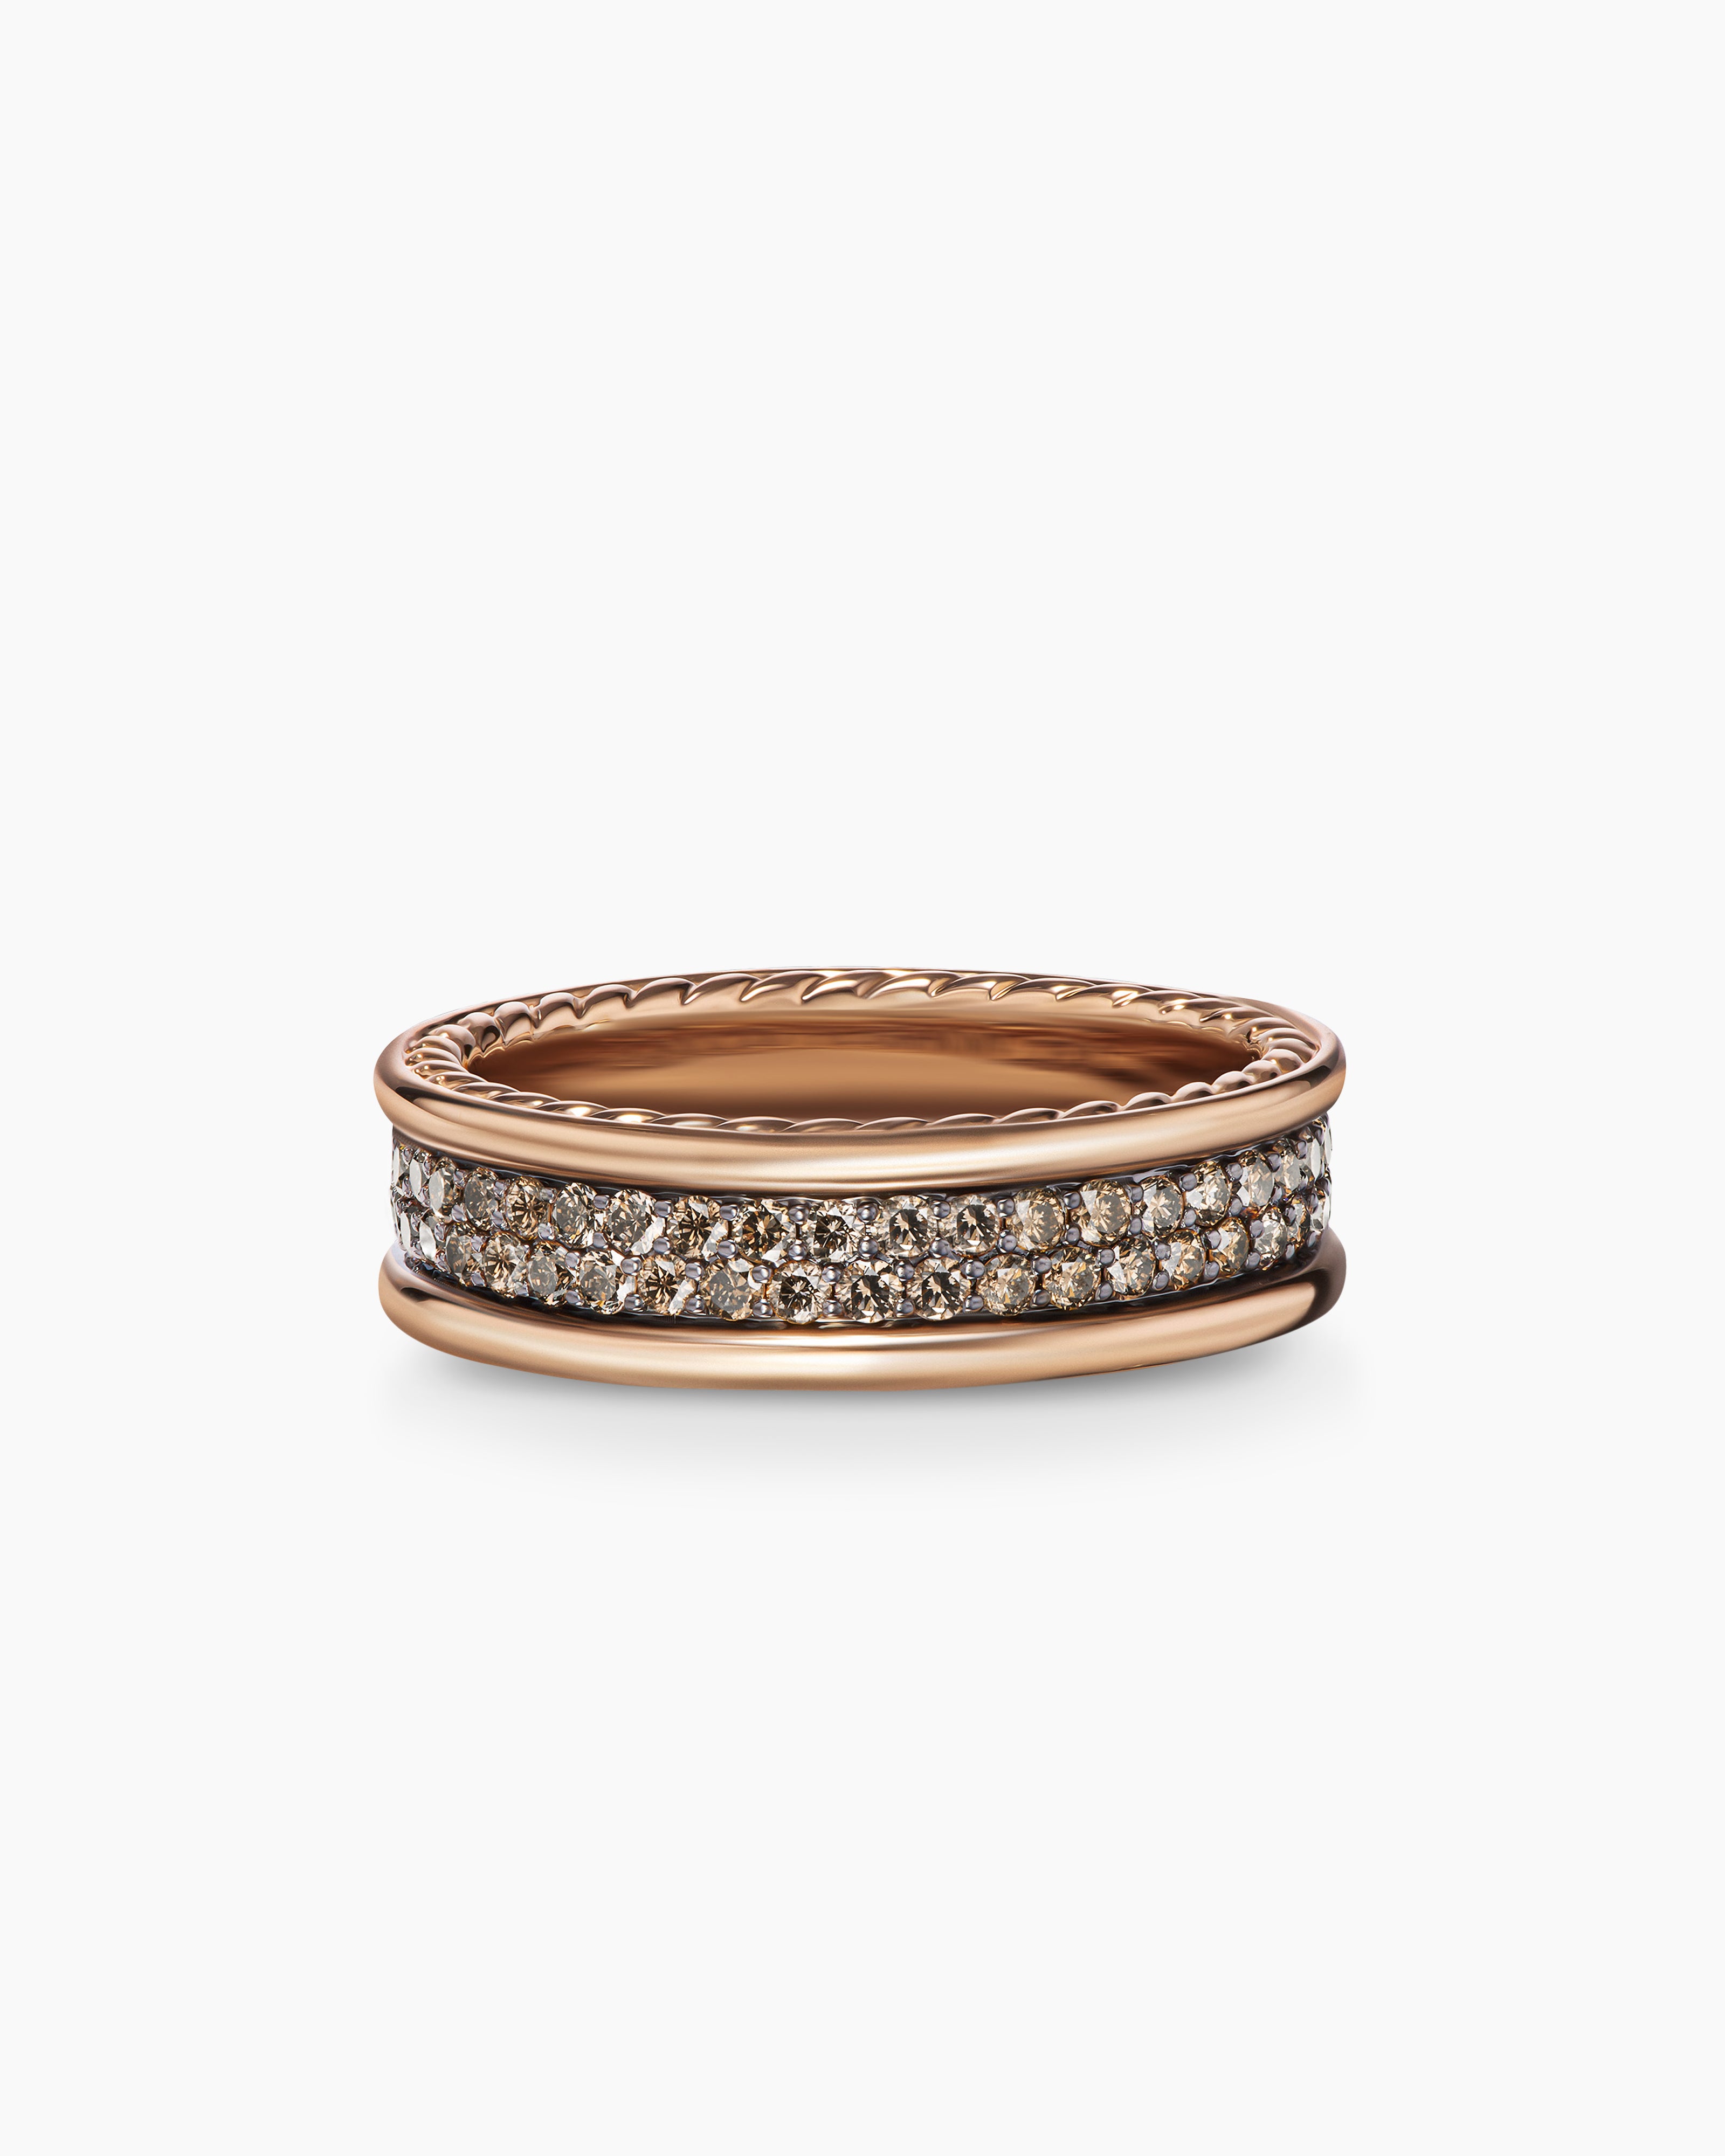 David Yurman Two-Row Buckle Bracelet with Diamonds